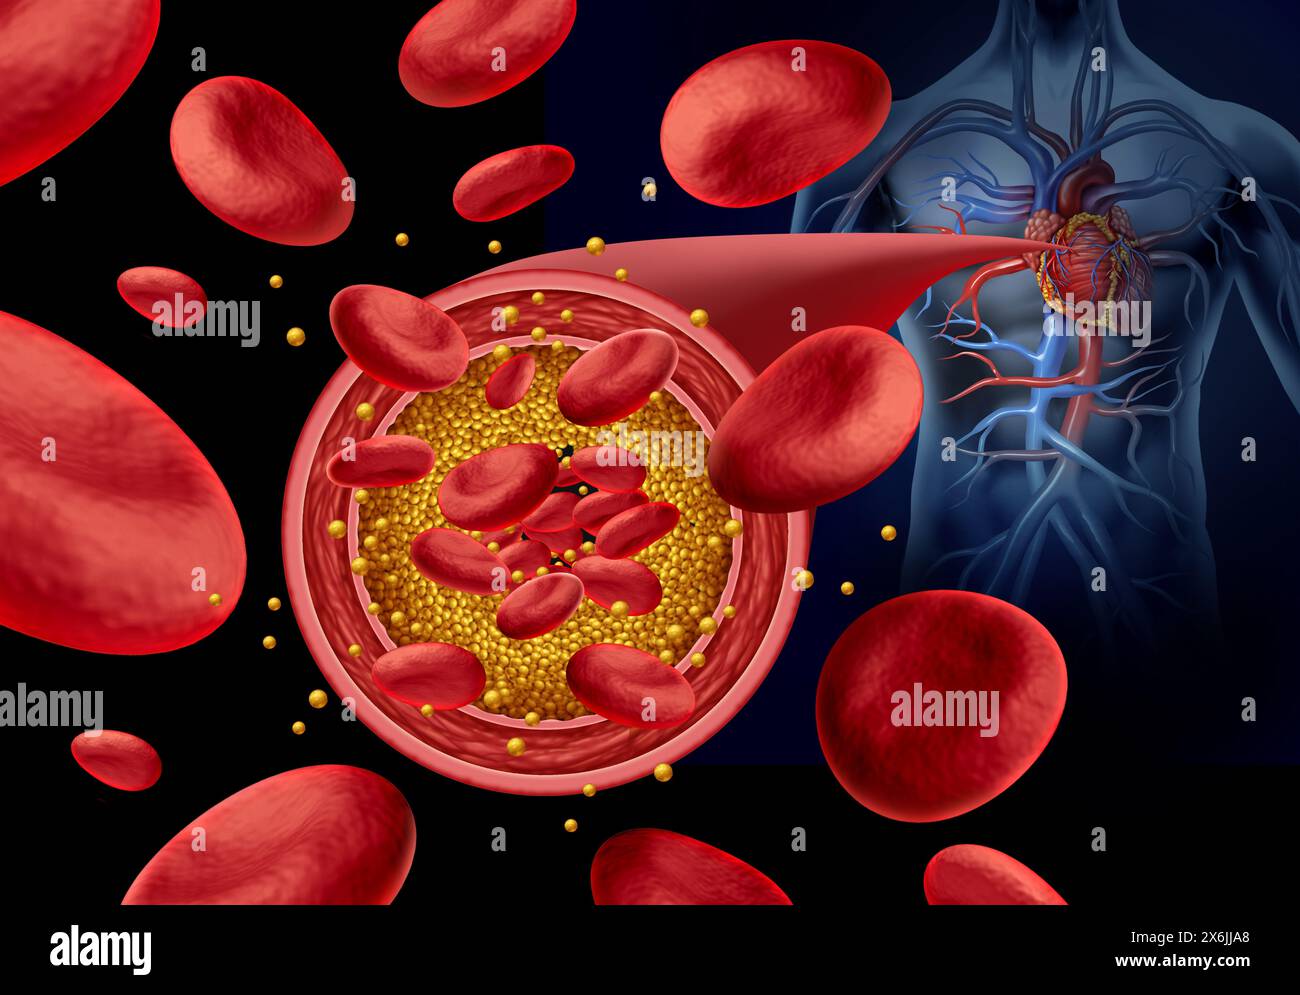 Athérosclérose plaque artérielle et artères obstruées maladie concept médical avec des cellules sanguines qui est bloqué par l'accumulation de cholestérol comme symbole Banque D'Images